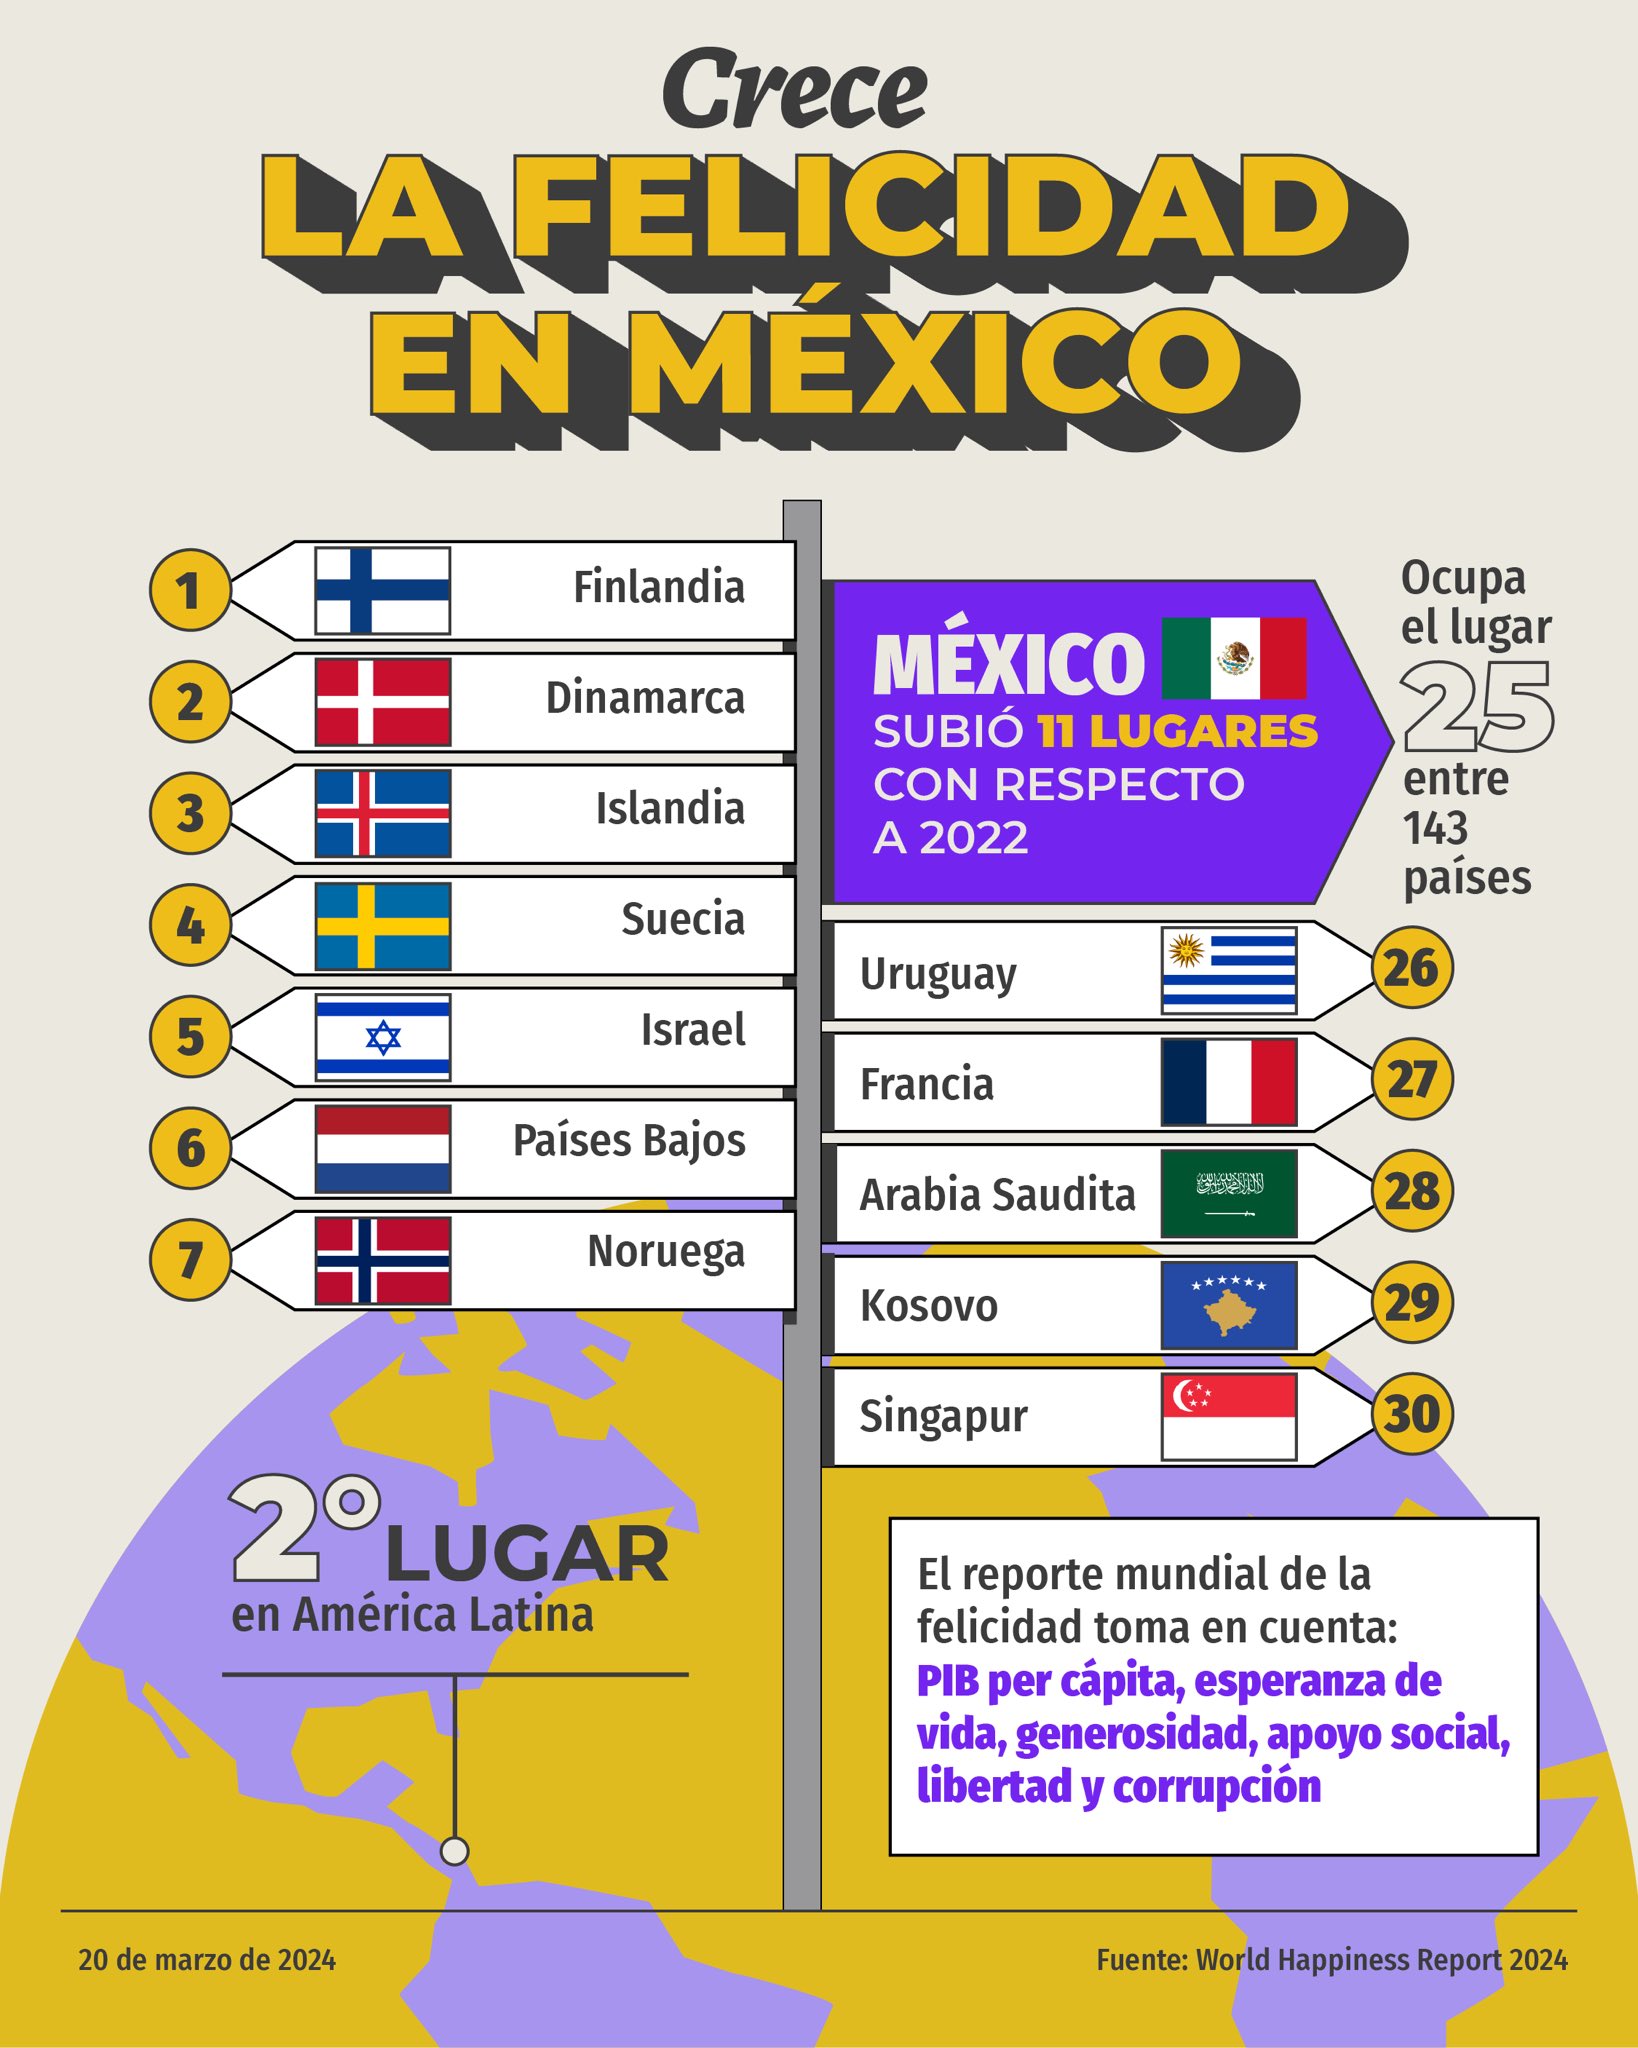 México obtiene el lugar 25 de los paises más felices